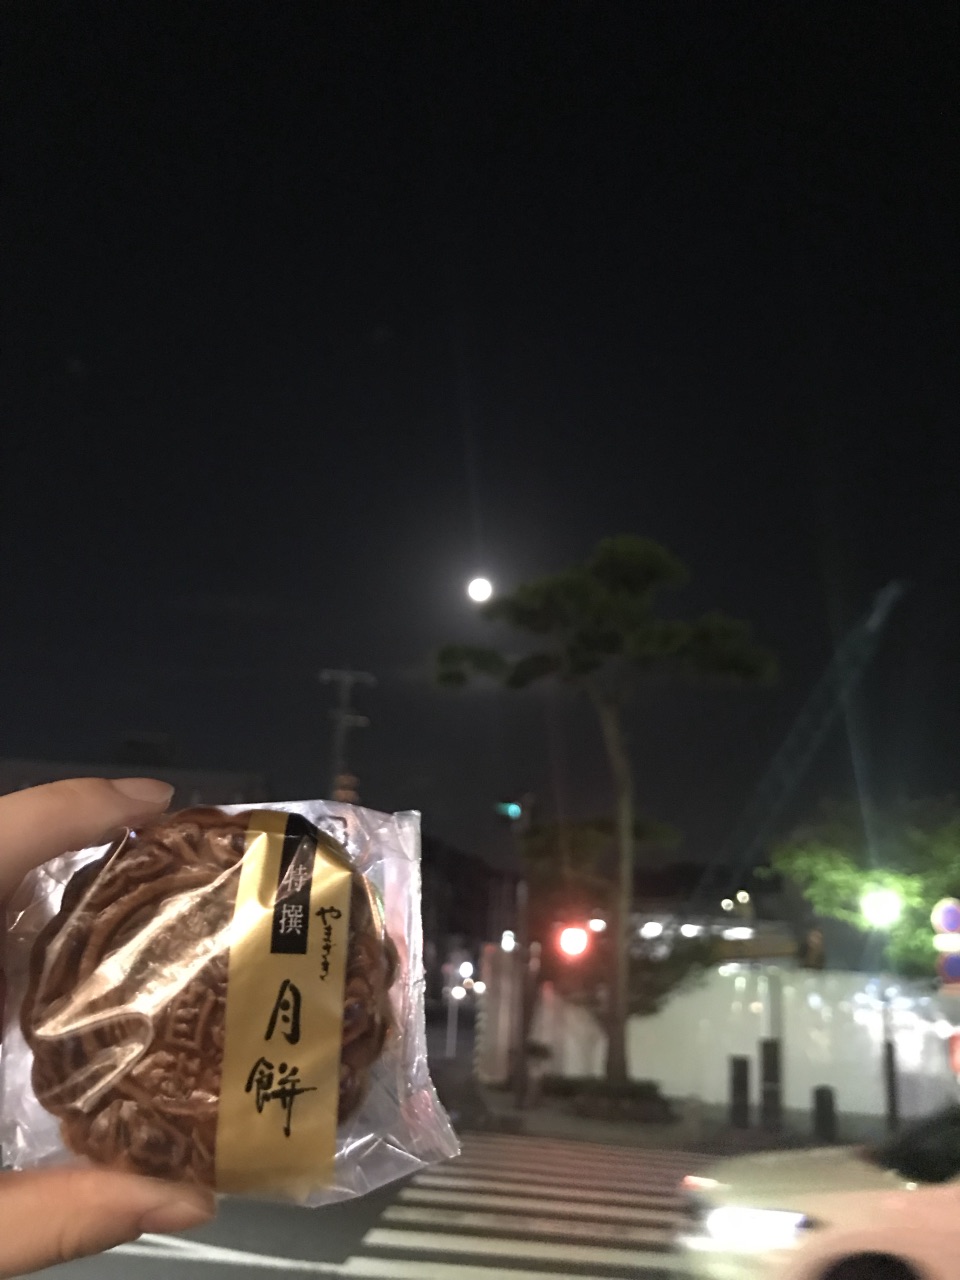 中秋节的月饼